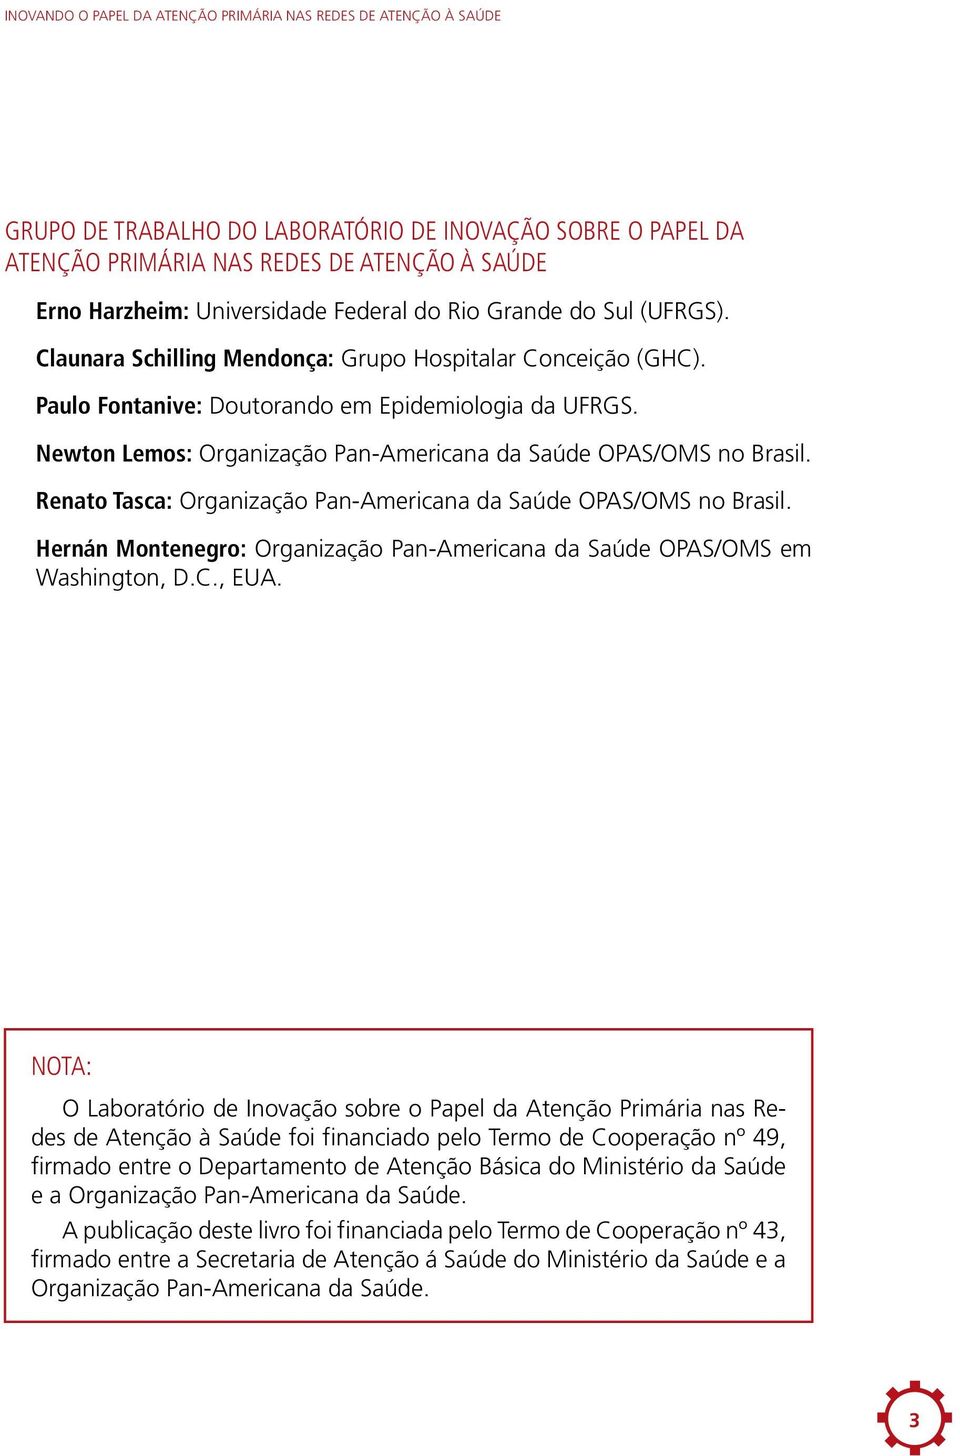 Newton Lemos: Organização Pan-Americana da Saúde OPAS/OMS no Brasil. Renato Tasca: Organização Pan-Americana da Saúde OPAS/OMS no Brasil.